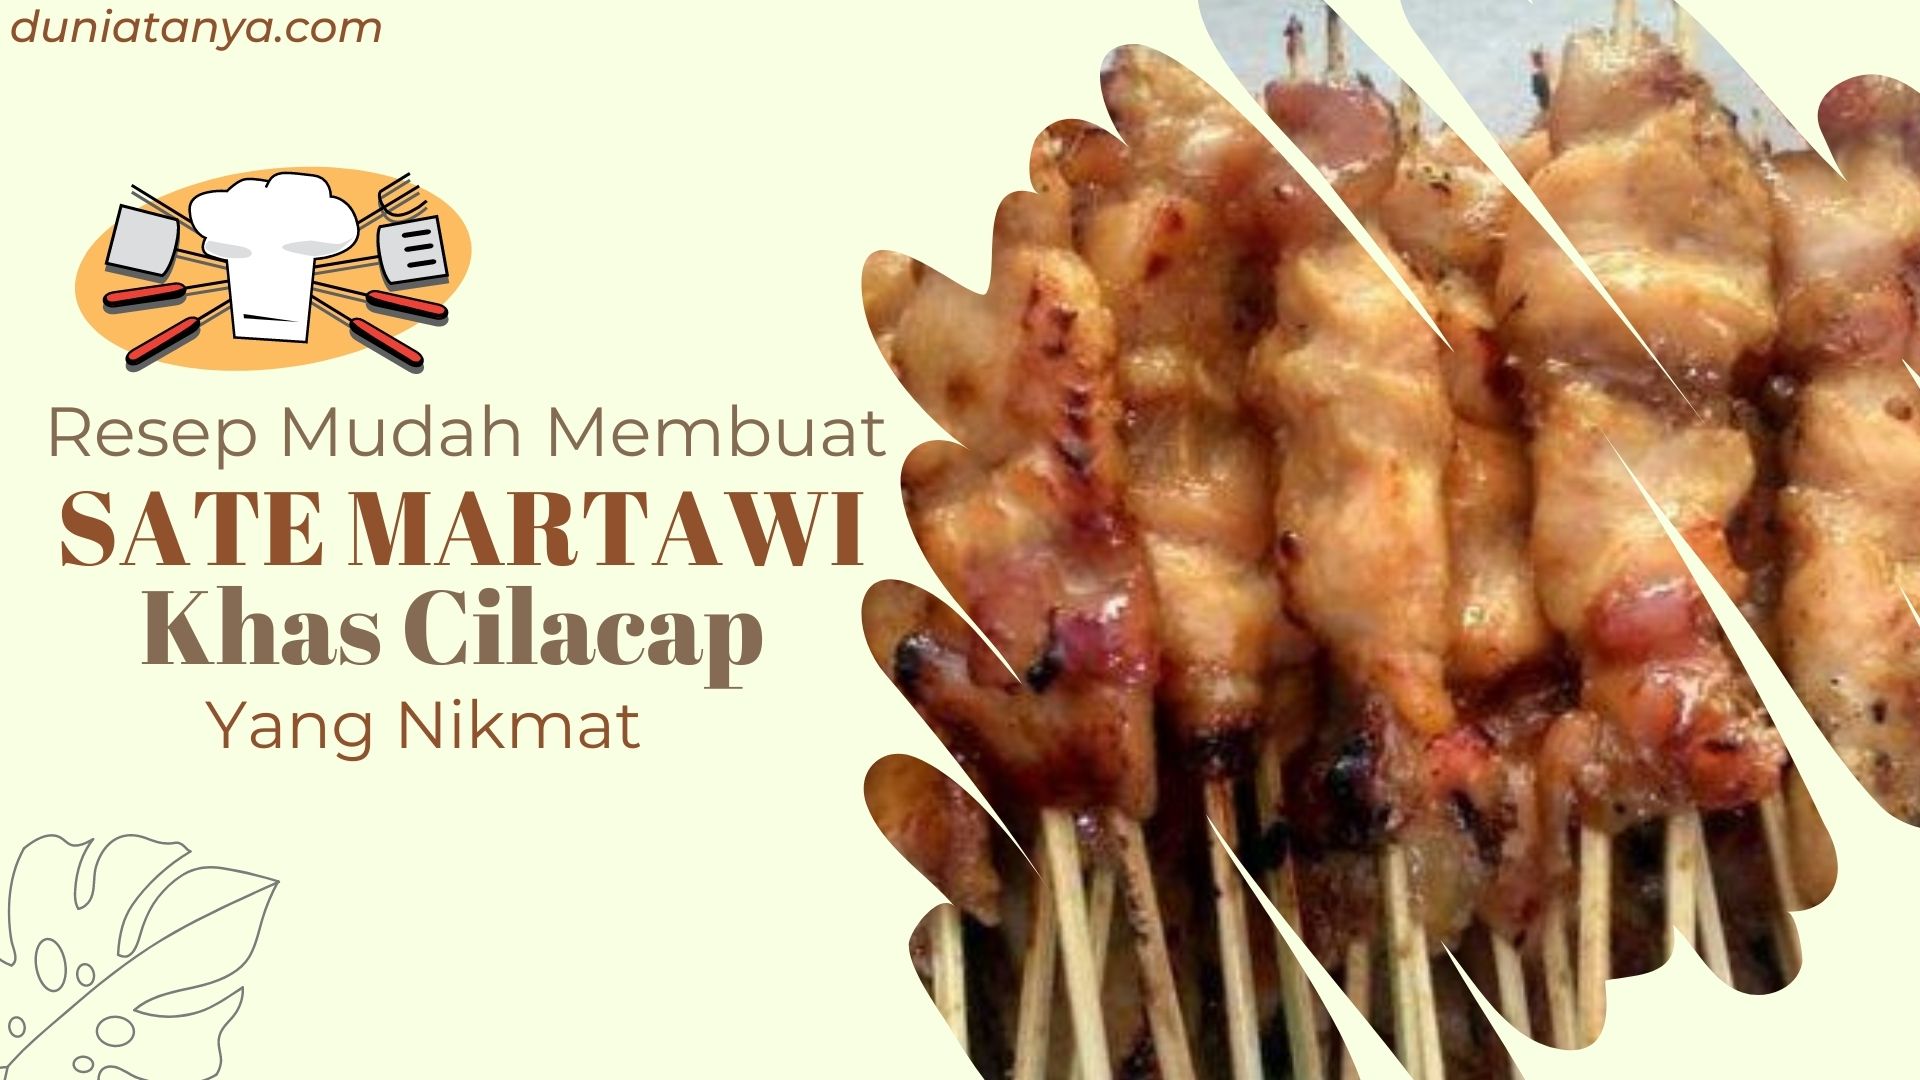 You are currently viewing Resep Mudah Membuat SATE MARTAWI Khas Cilacap Yang Nikmat